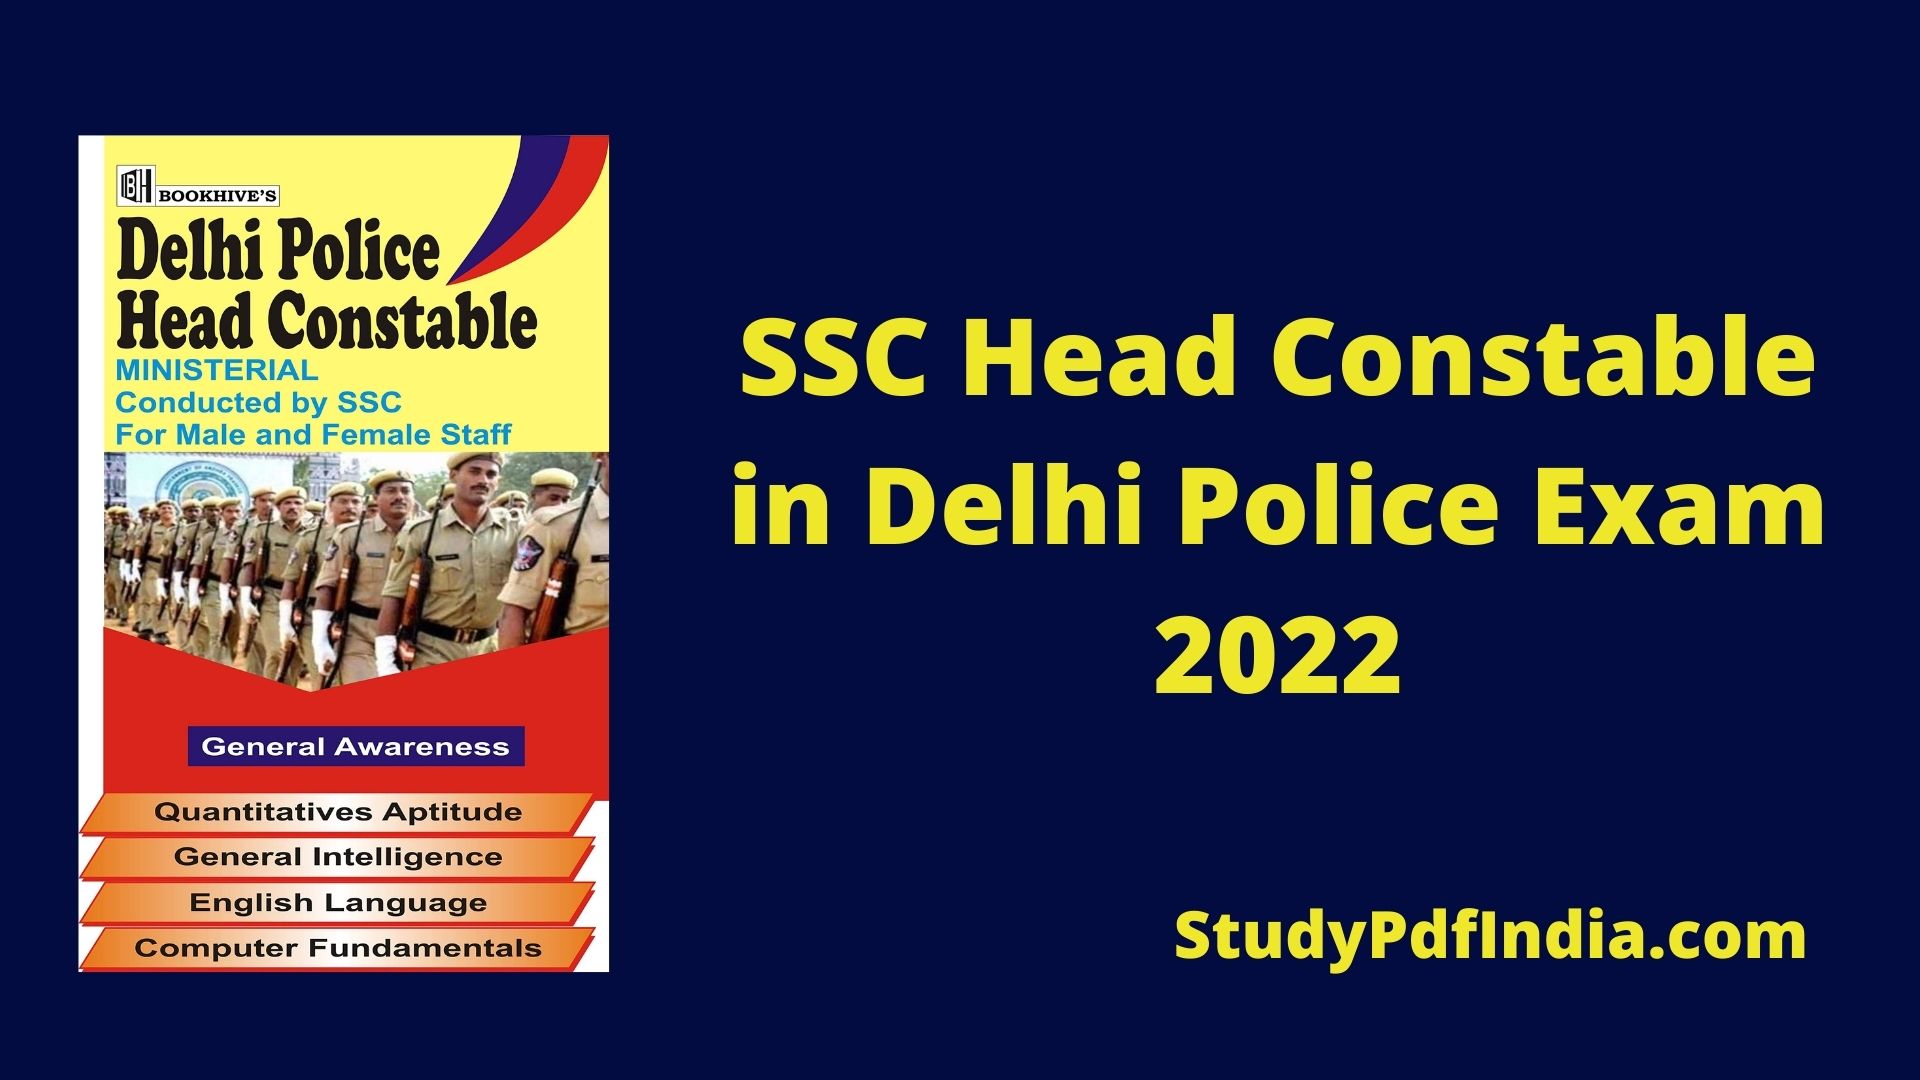 SSC Head Constable in Delhi Police Exam 2022